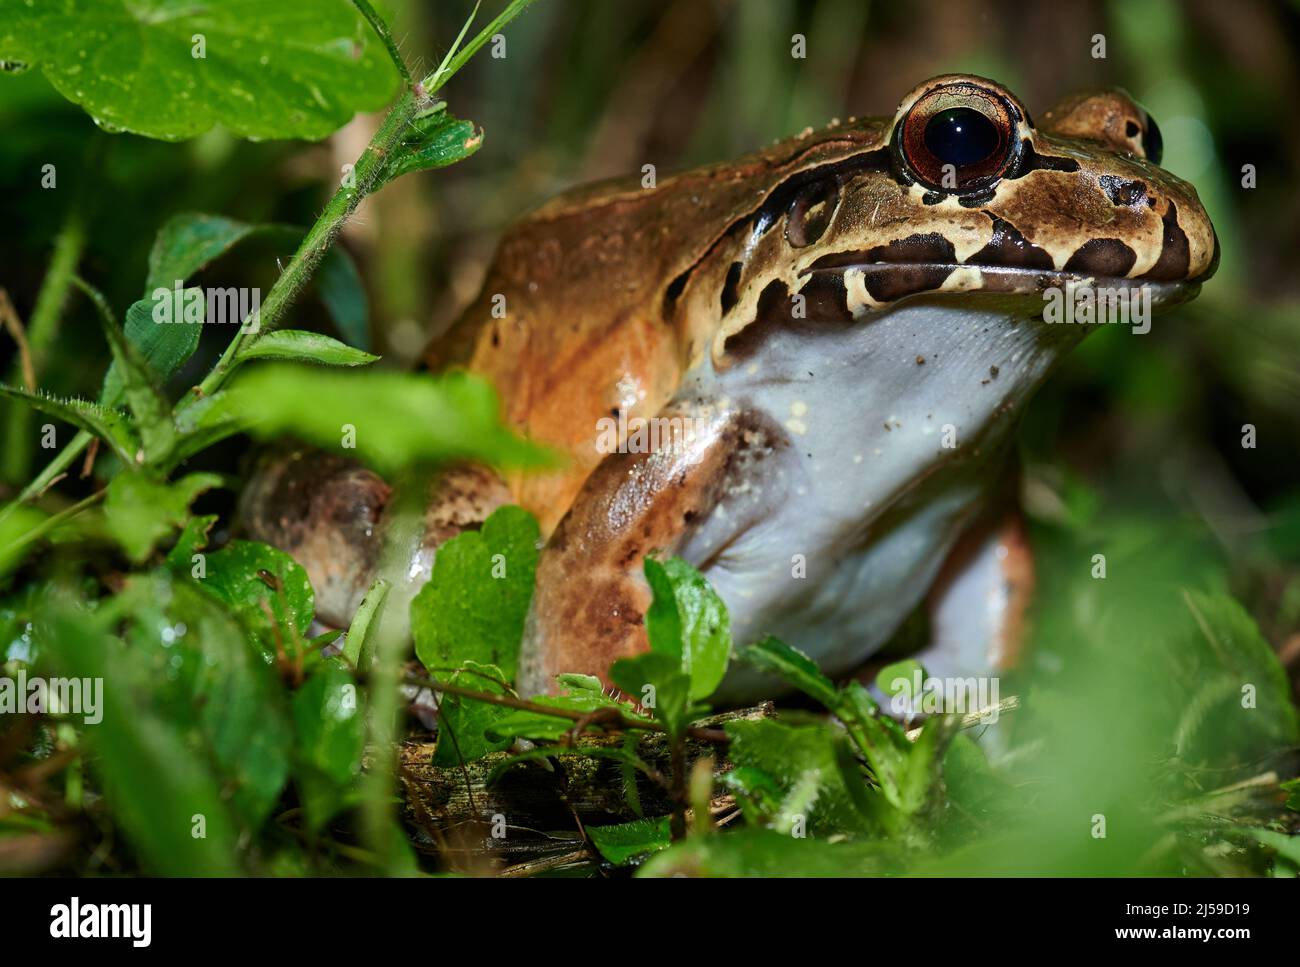 Especies silvestres de rana de rana leptodactylus savagei, Parque Nacional Volcán Arenal, Costa Rica, Centroamérica Foto de stock